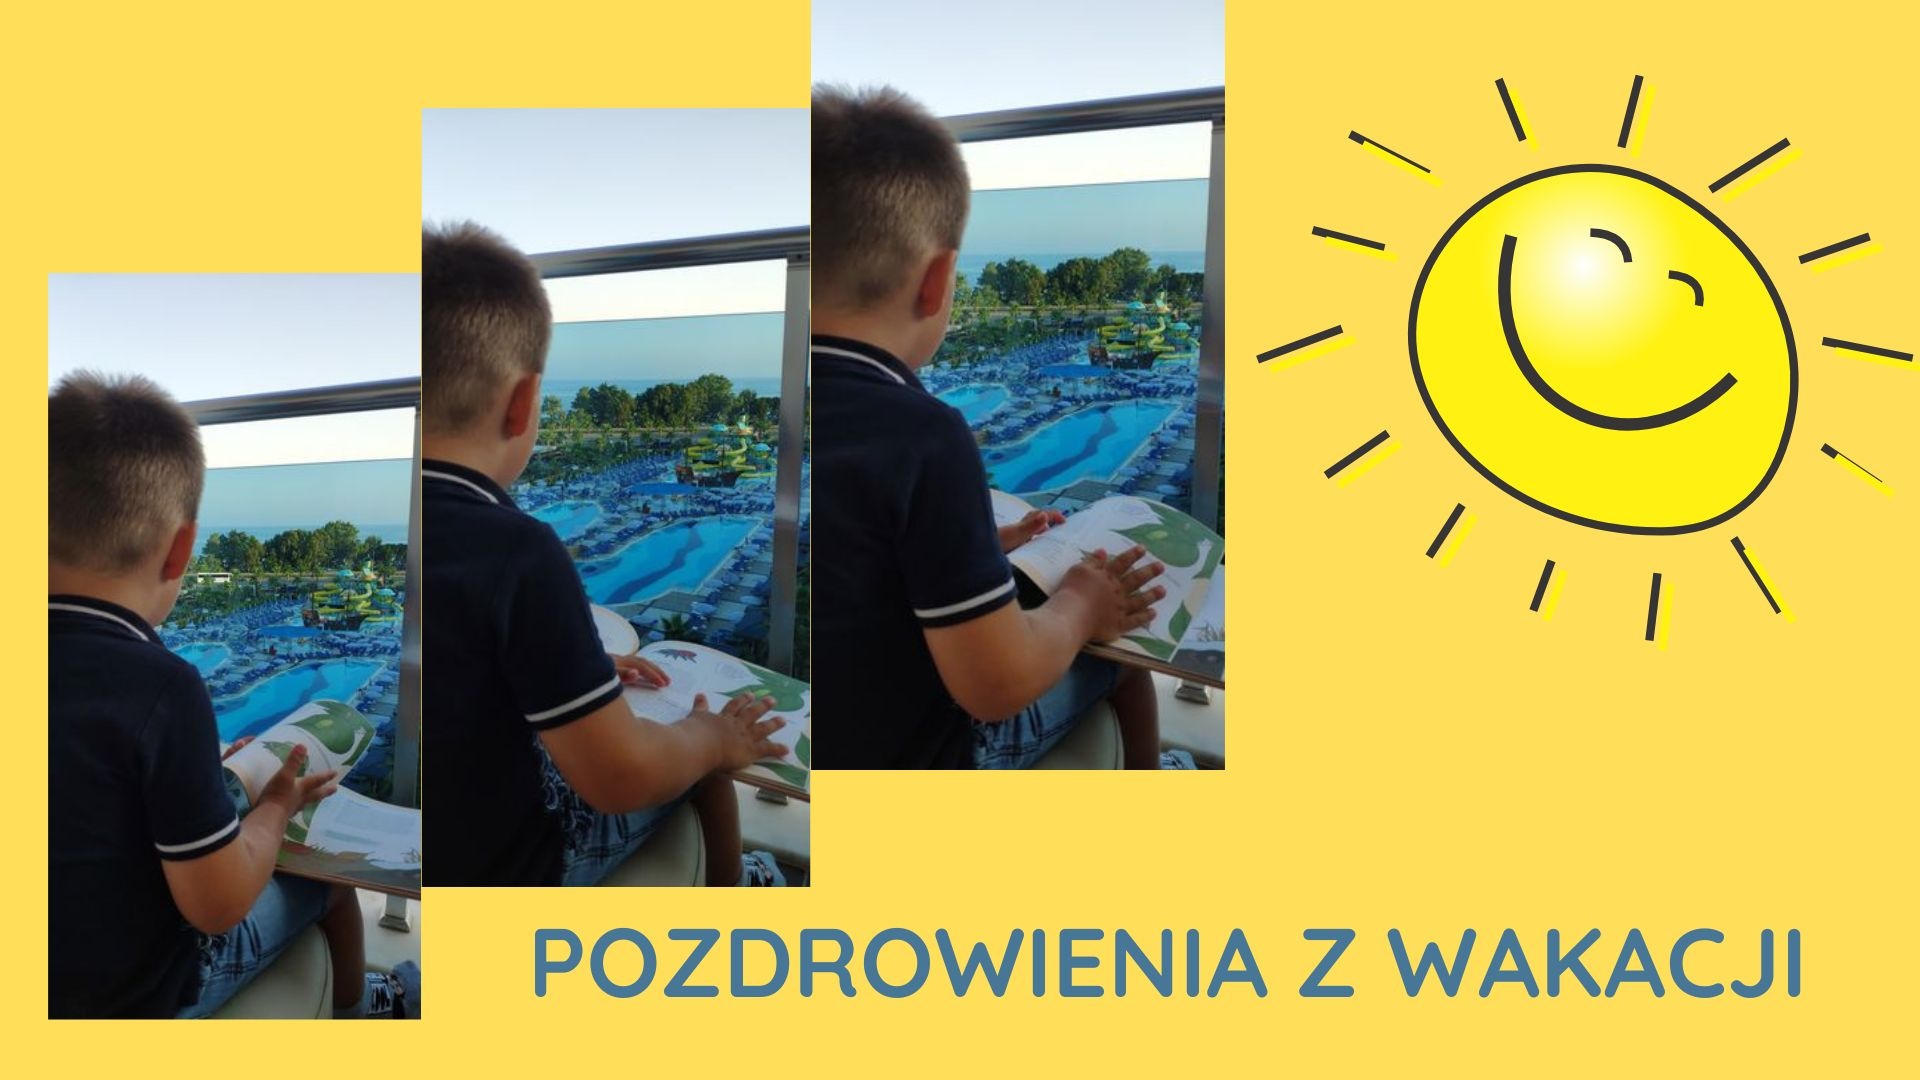 Na żółtym tle wklejone 3 zdjęcia chłopca, który siedzi na balkonie z otwartą książką na kolanach. Przed nim, w dole, baseny. W prawym rogu wklejona grafika: słońce i napis: Pozdrowenia z wakacji.